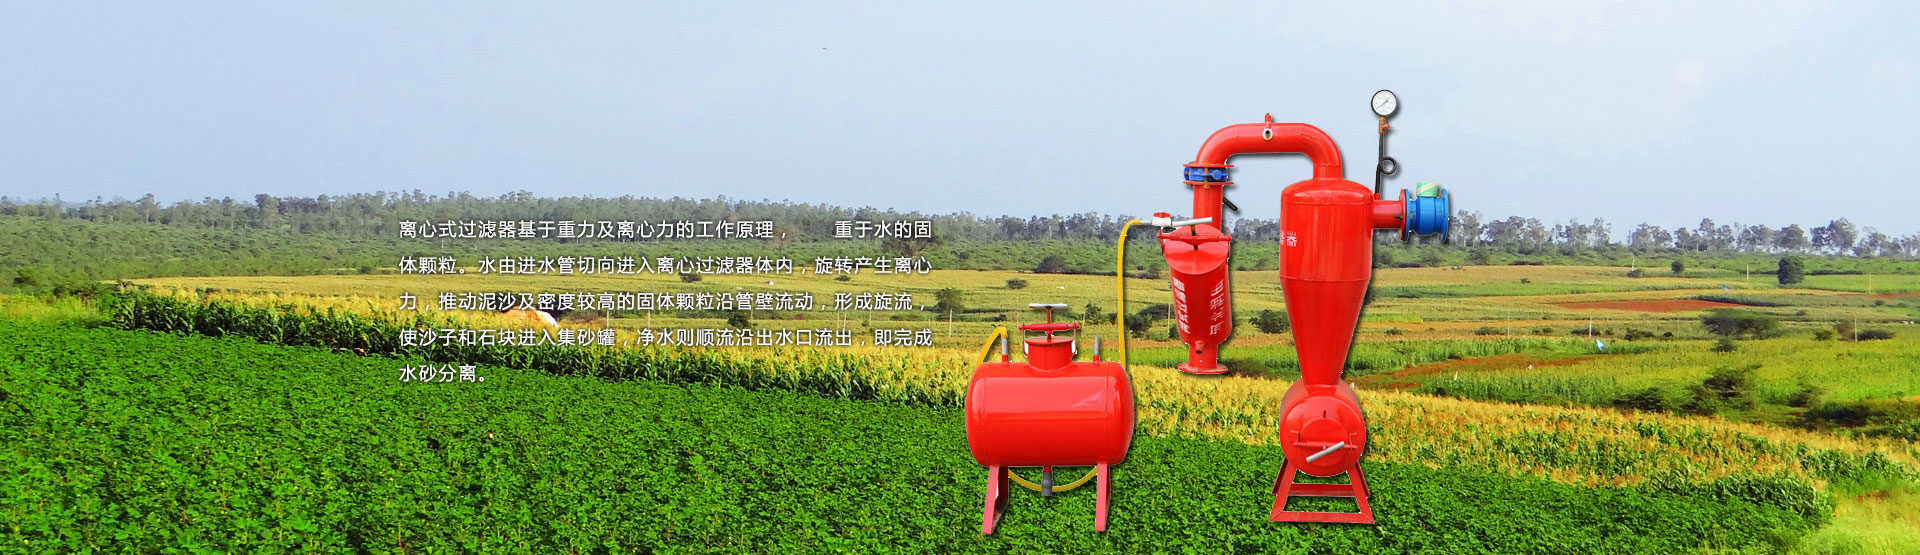 滴灌自動化灌溉係統,自動化灌溉